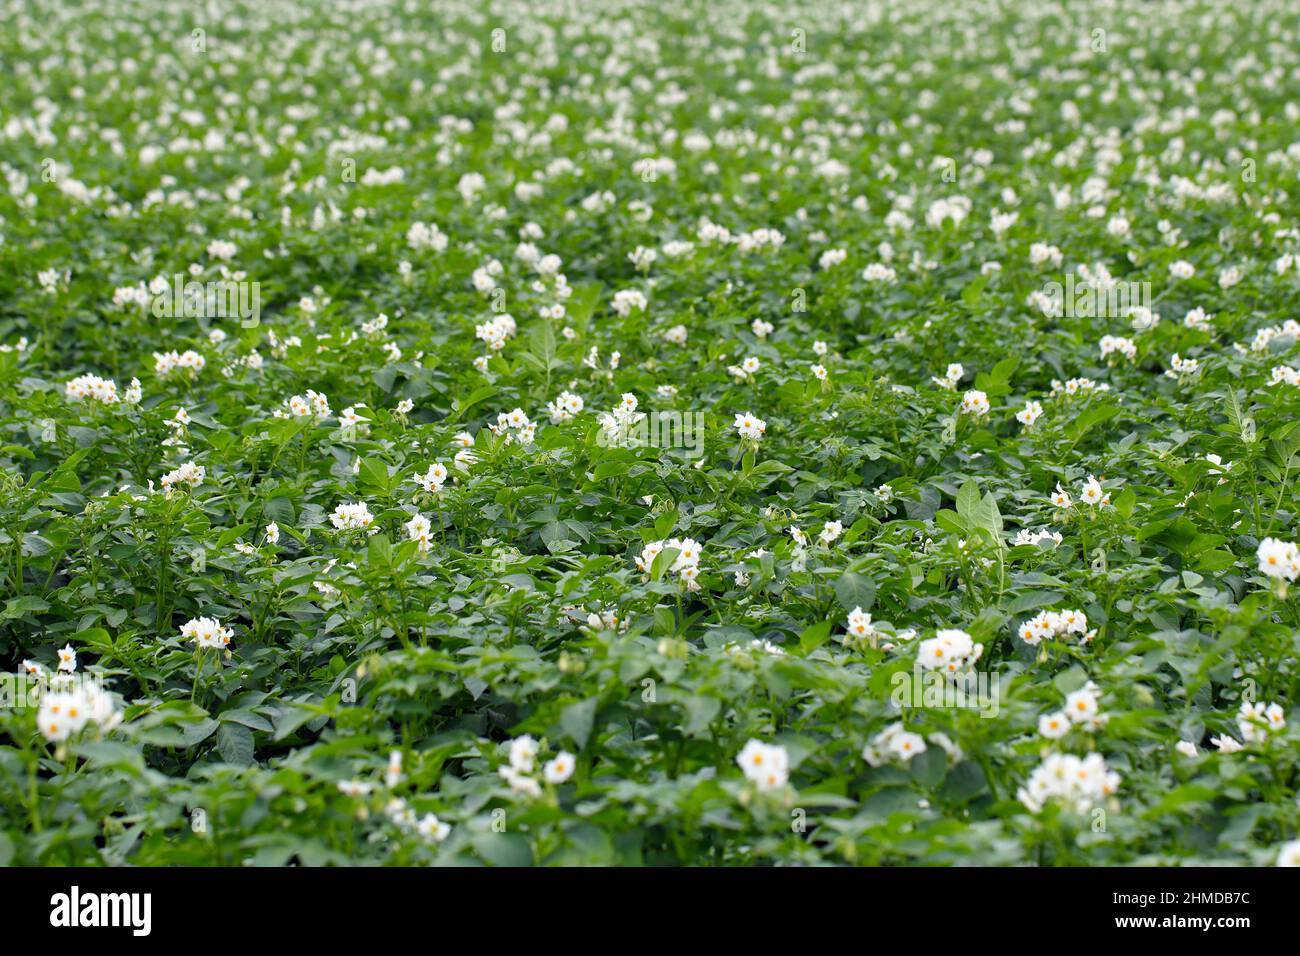 El florecimiento de los campos de patatas, patatas plantas con flores blancas crecen en campos de agricultores Foto de stock